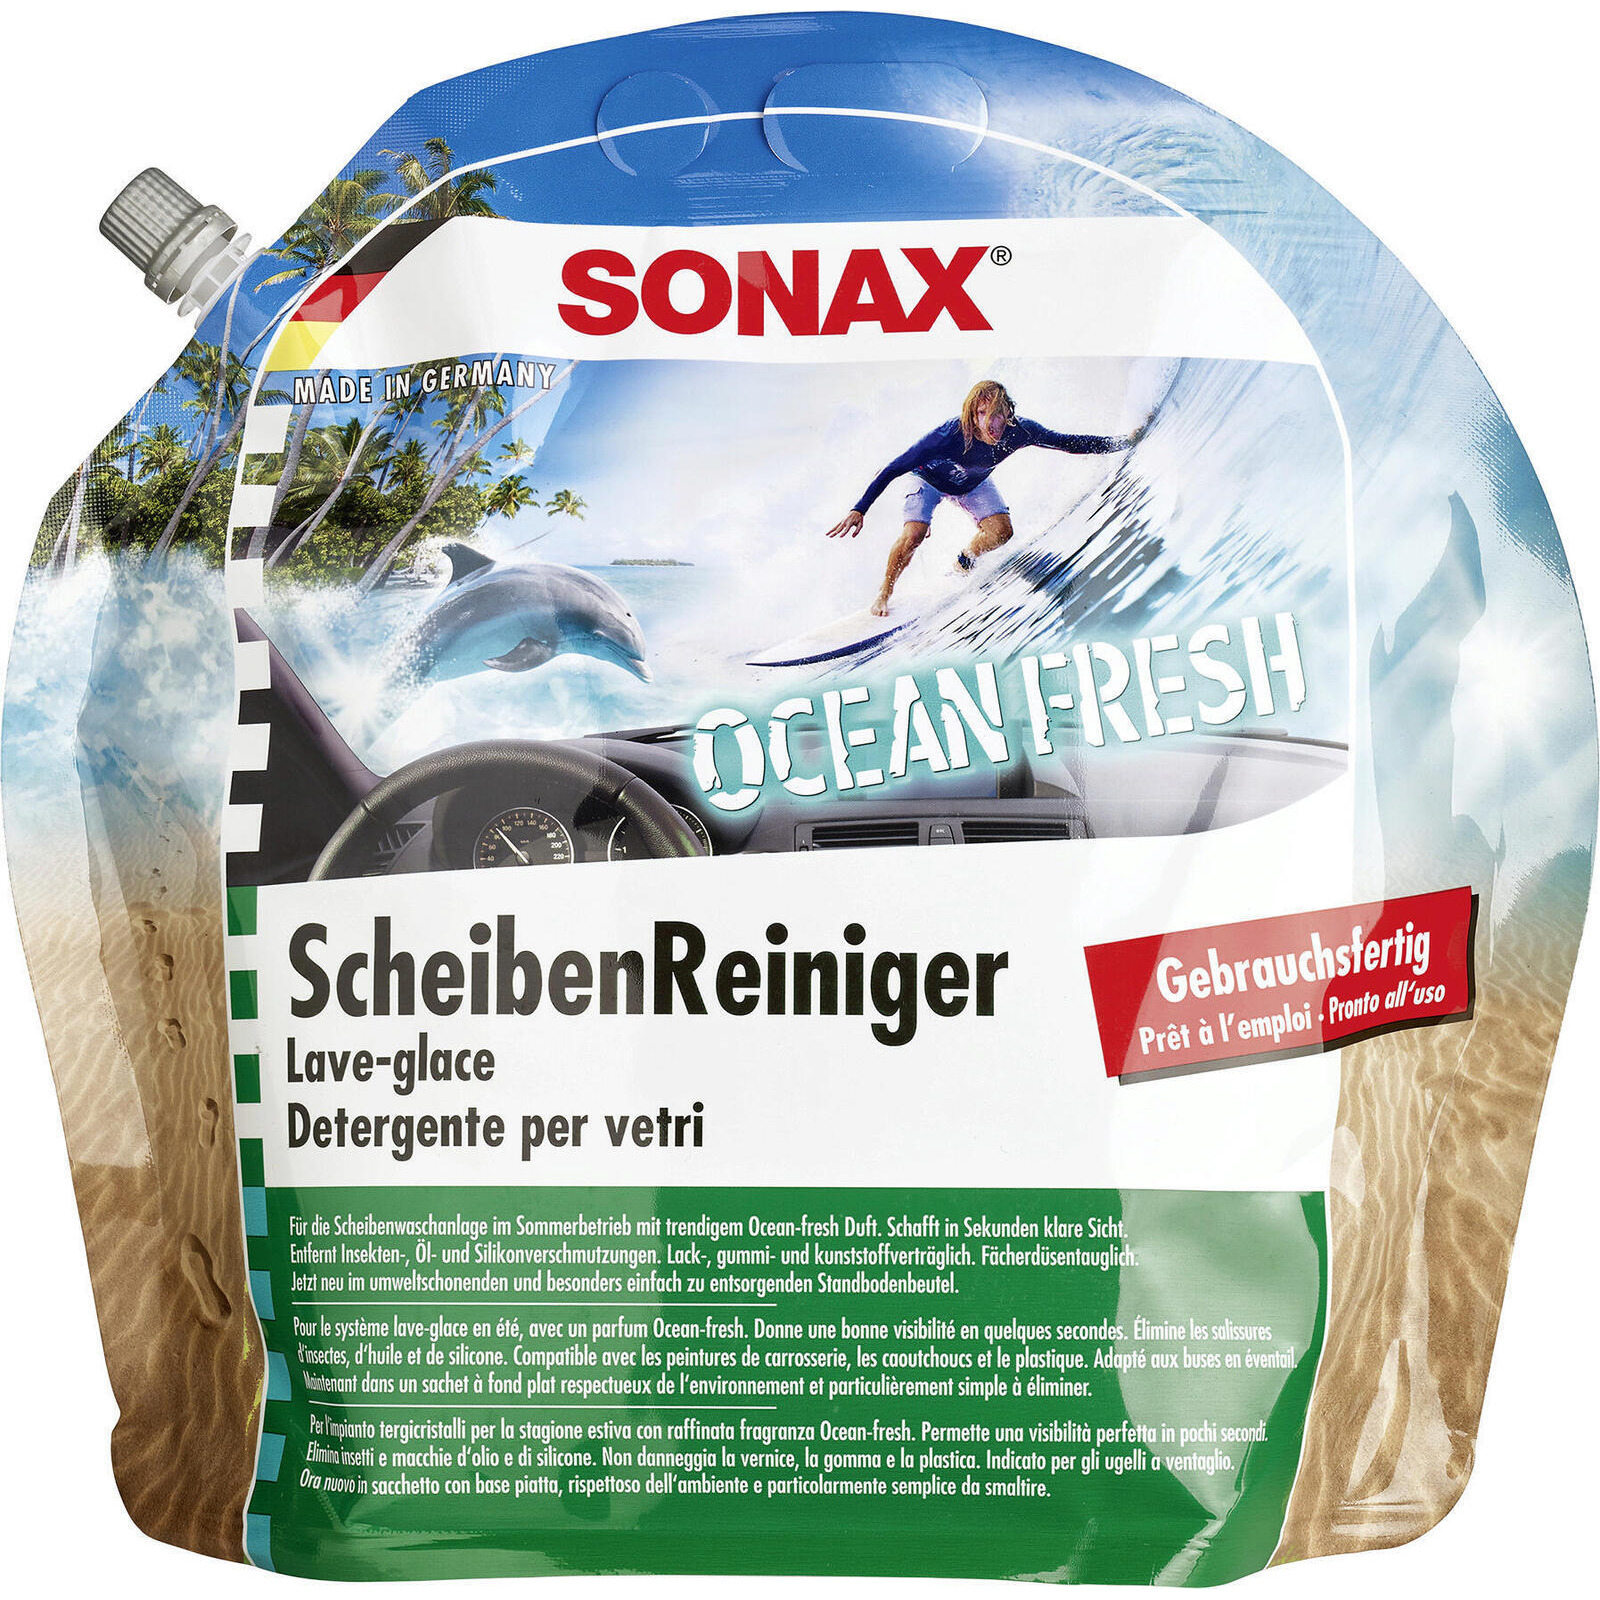 SONAX Reiniger, Scheibenreinigungsanlage ScheibenReiniger gebrauchsfertig Ocean-fresh